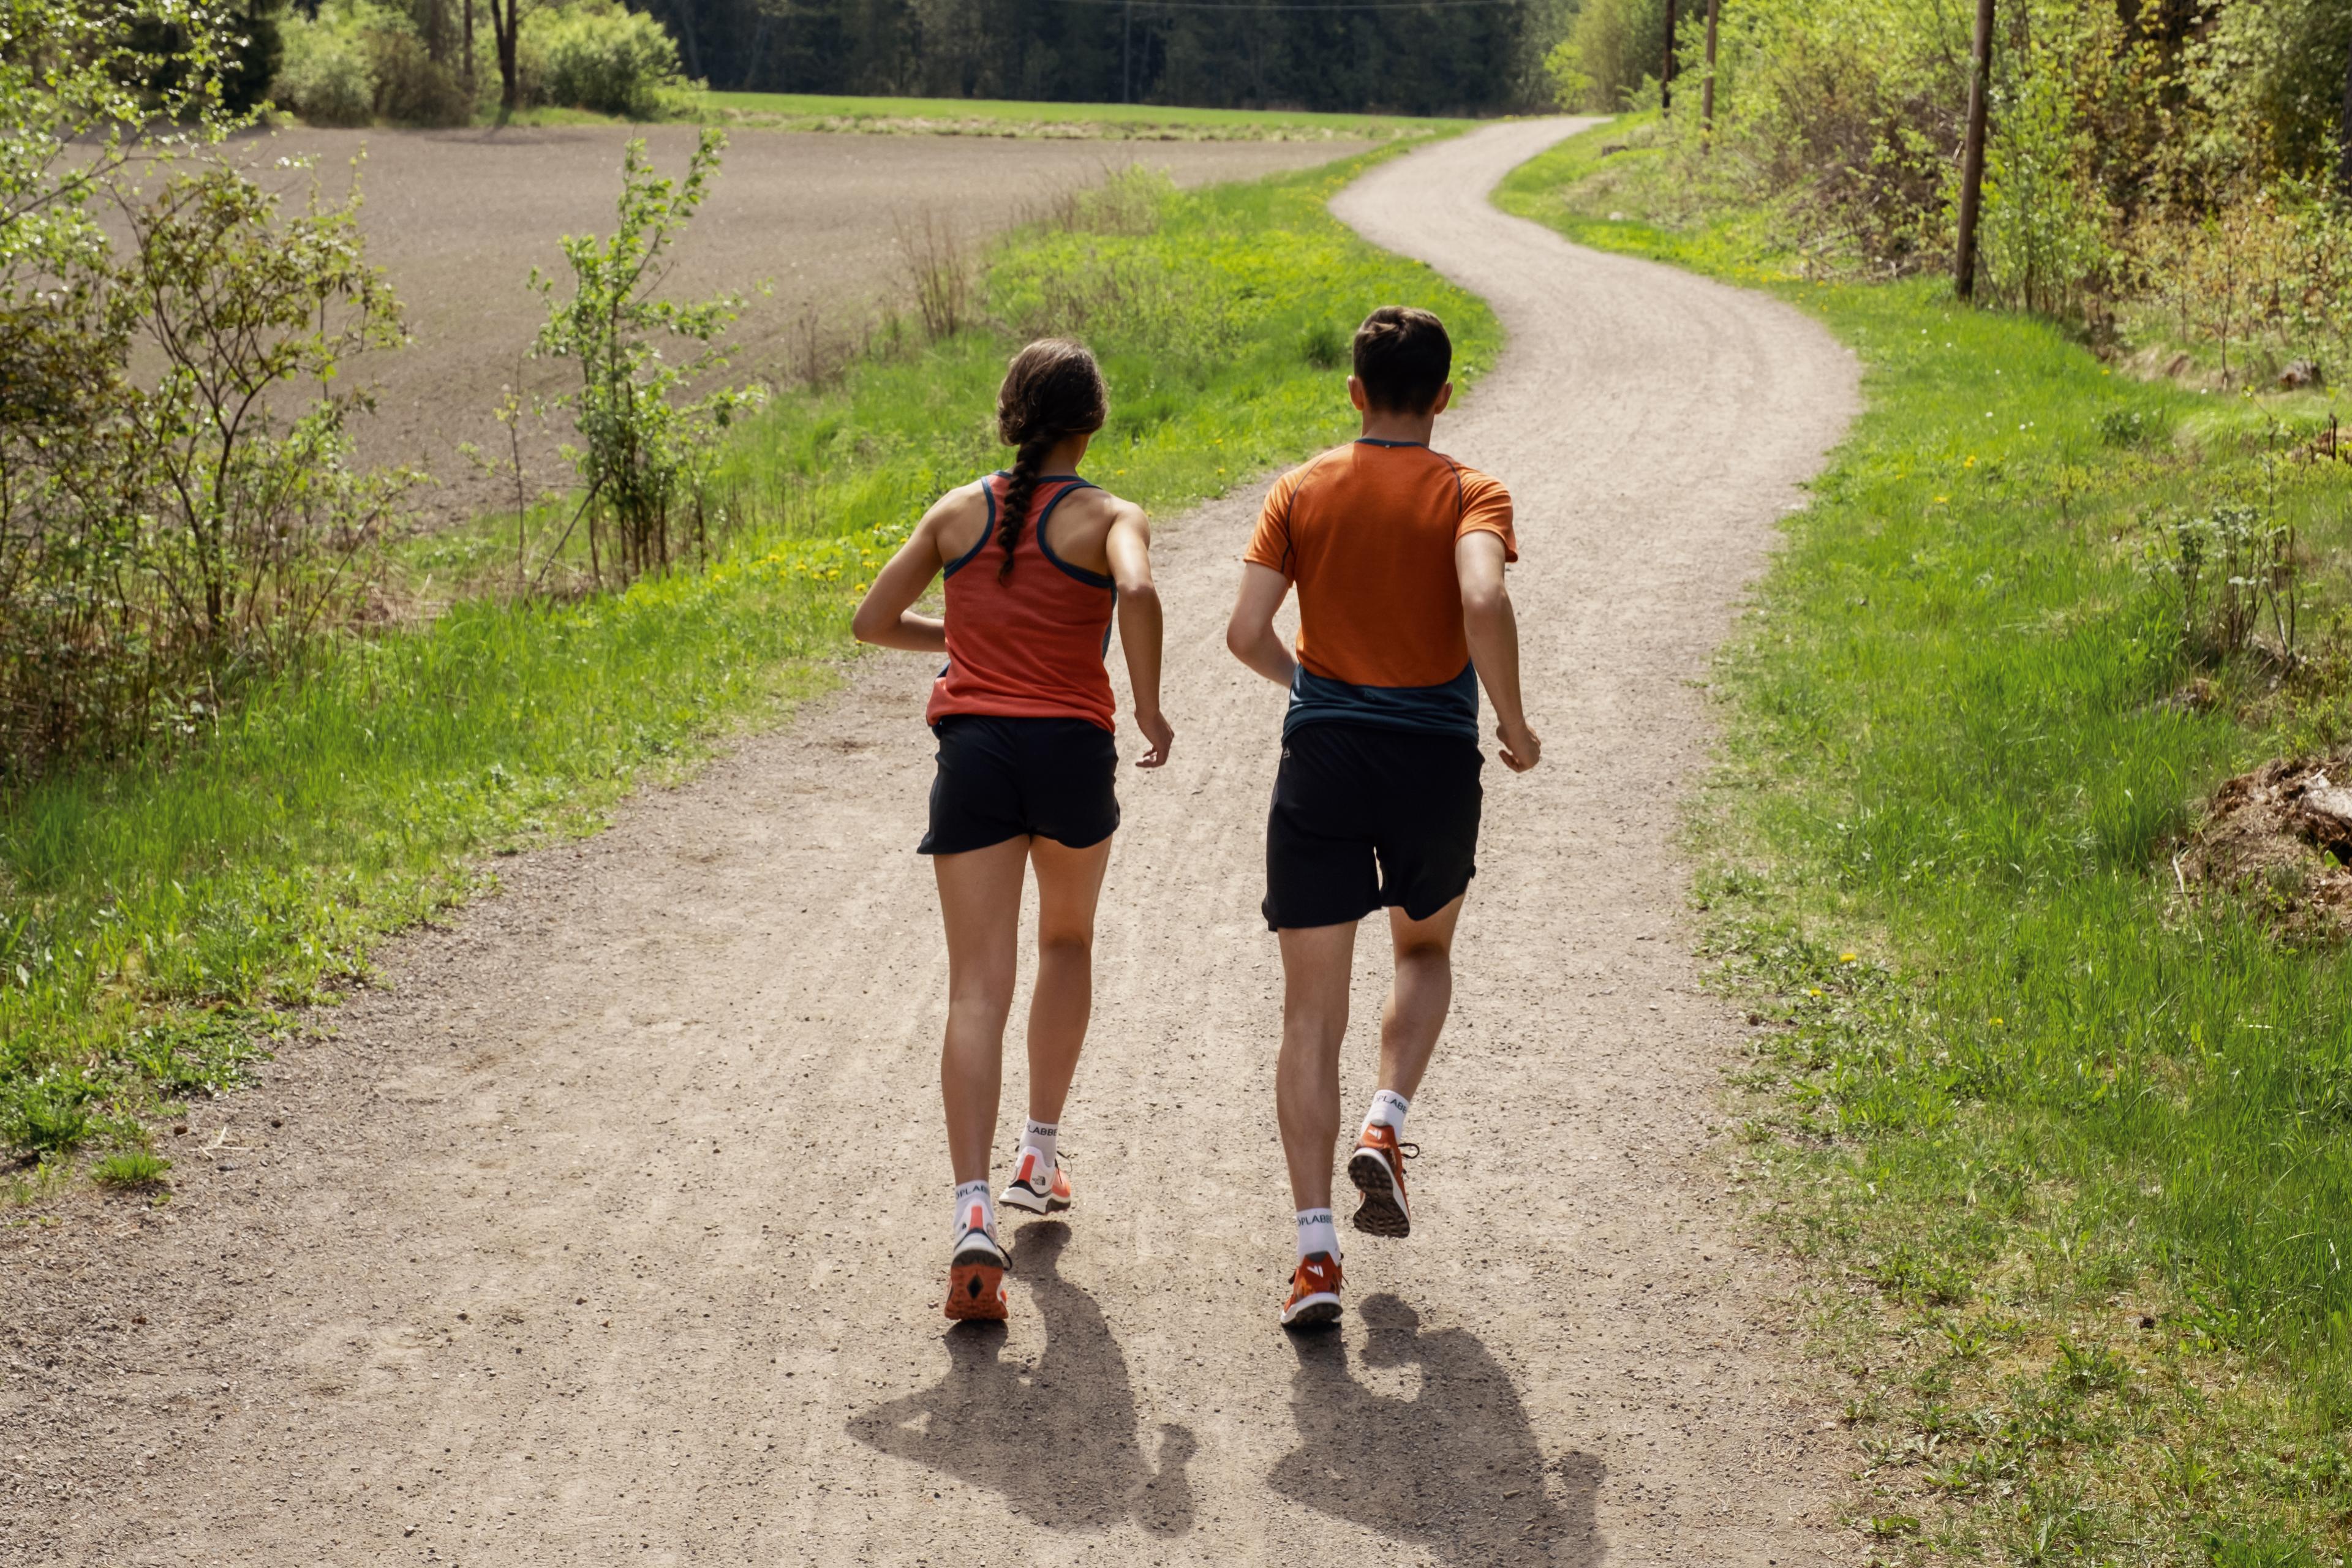 Mann og dame løper utendørs på grussti